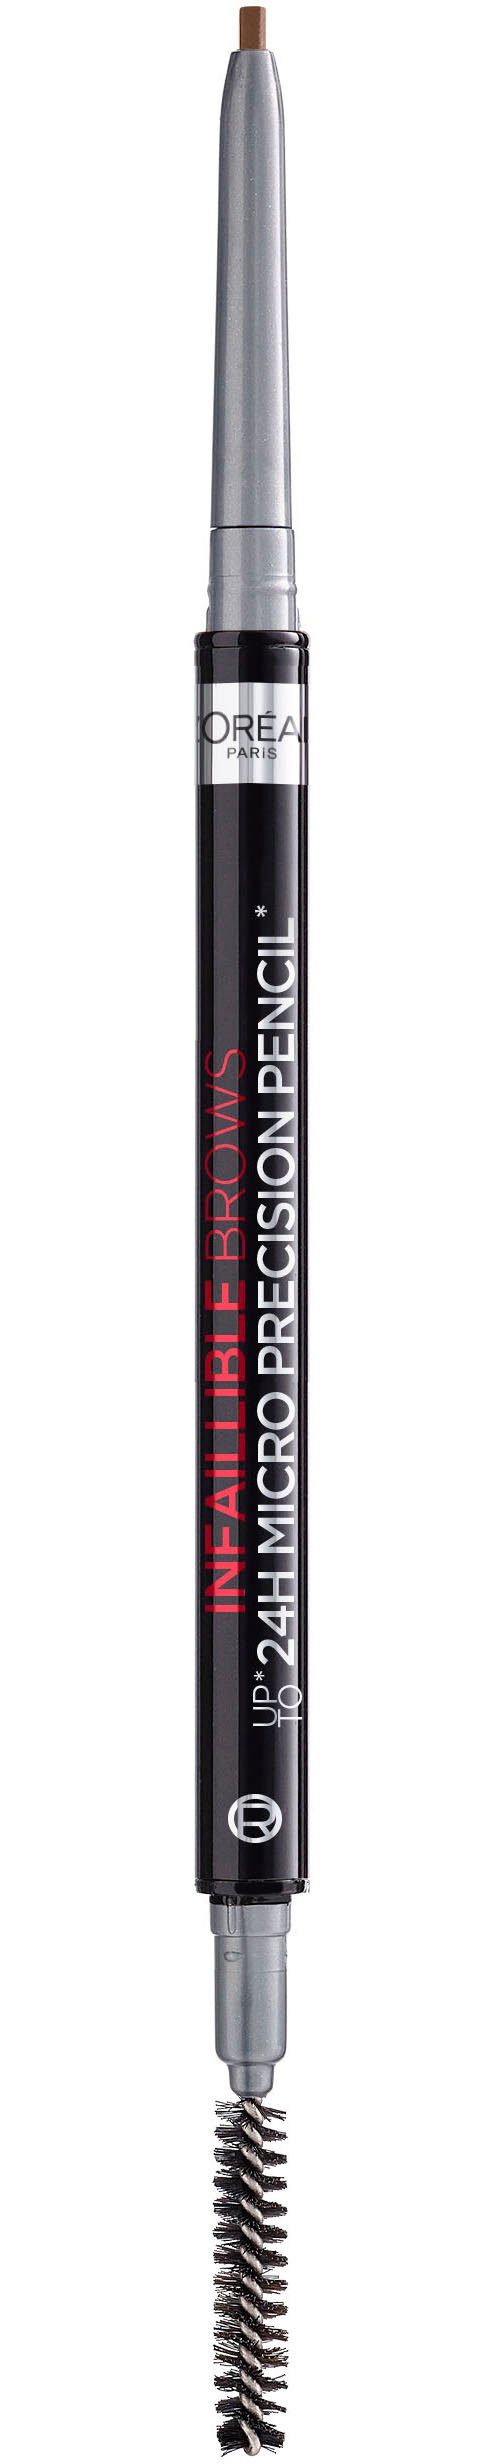 L'ORÉAL PARIS Augenbrauen-Stift Brow Skinny 108 Dark Spiralbürste mit Augen-Make-Up, Definer, Artist Stiftform in Brunette